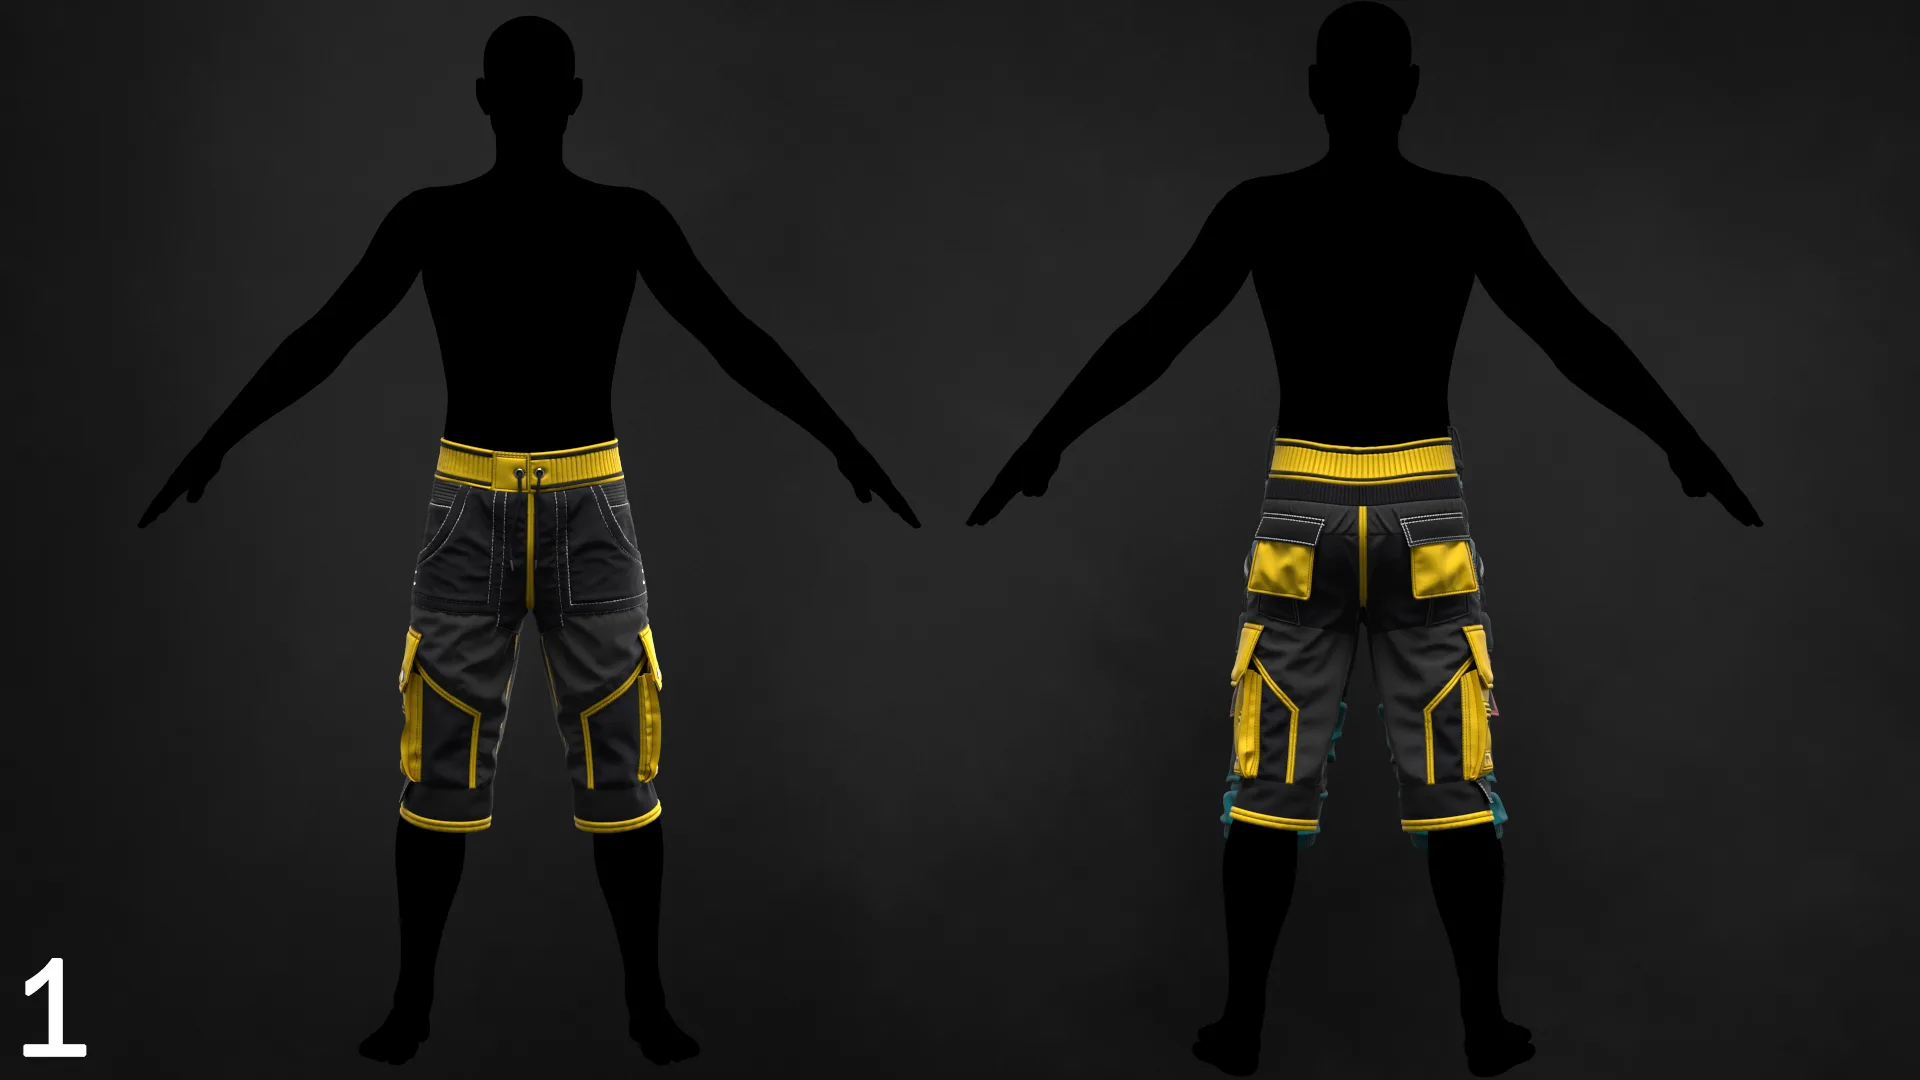 Tutorial MD/Clo3D - Realistic Shorts